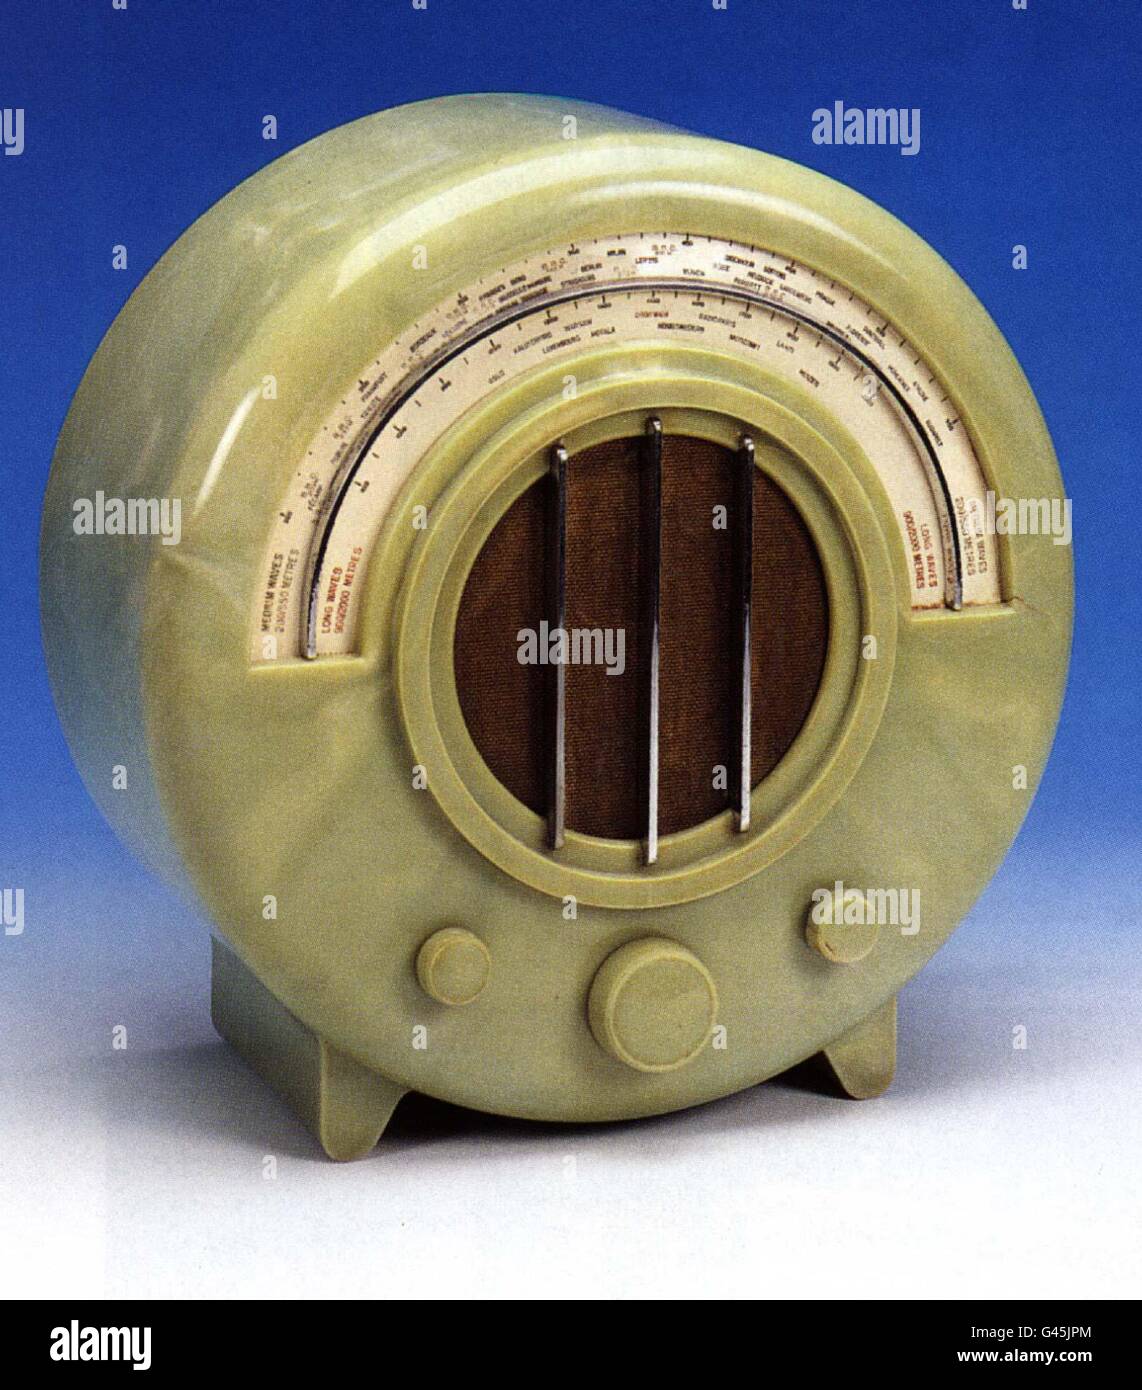 Un ricevitore radio Ekco AD65 verde onice eccezionalmente raro, inglese, circa 1934 - che sarà venduto a Sotheb's London il 7 marzo 1997, si prevede di recuperare tra il 18,000 e il 25,000. Vedere PA Story SALE radio. Foto PA Foto Stock